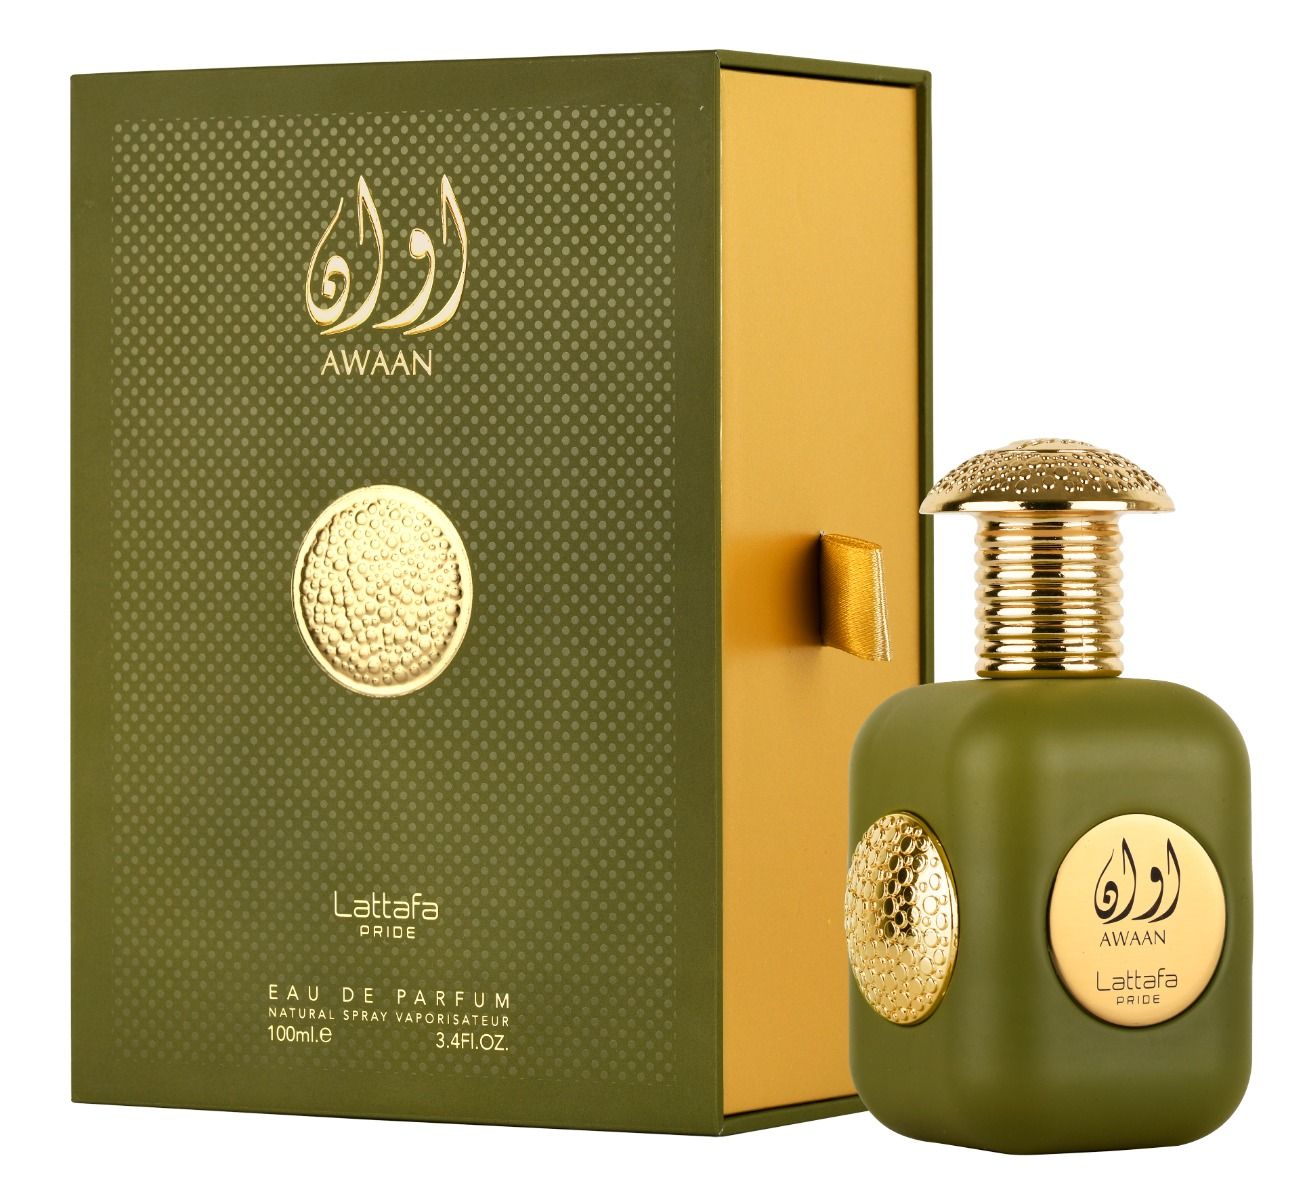 Lattafa Away Eau De Parfum 3.4 oz 100 ml